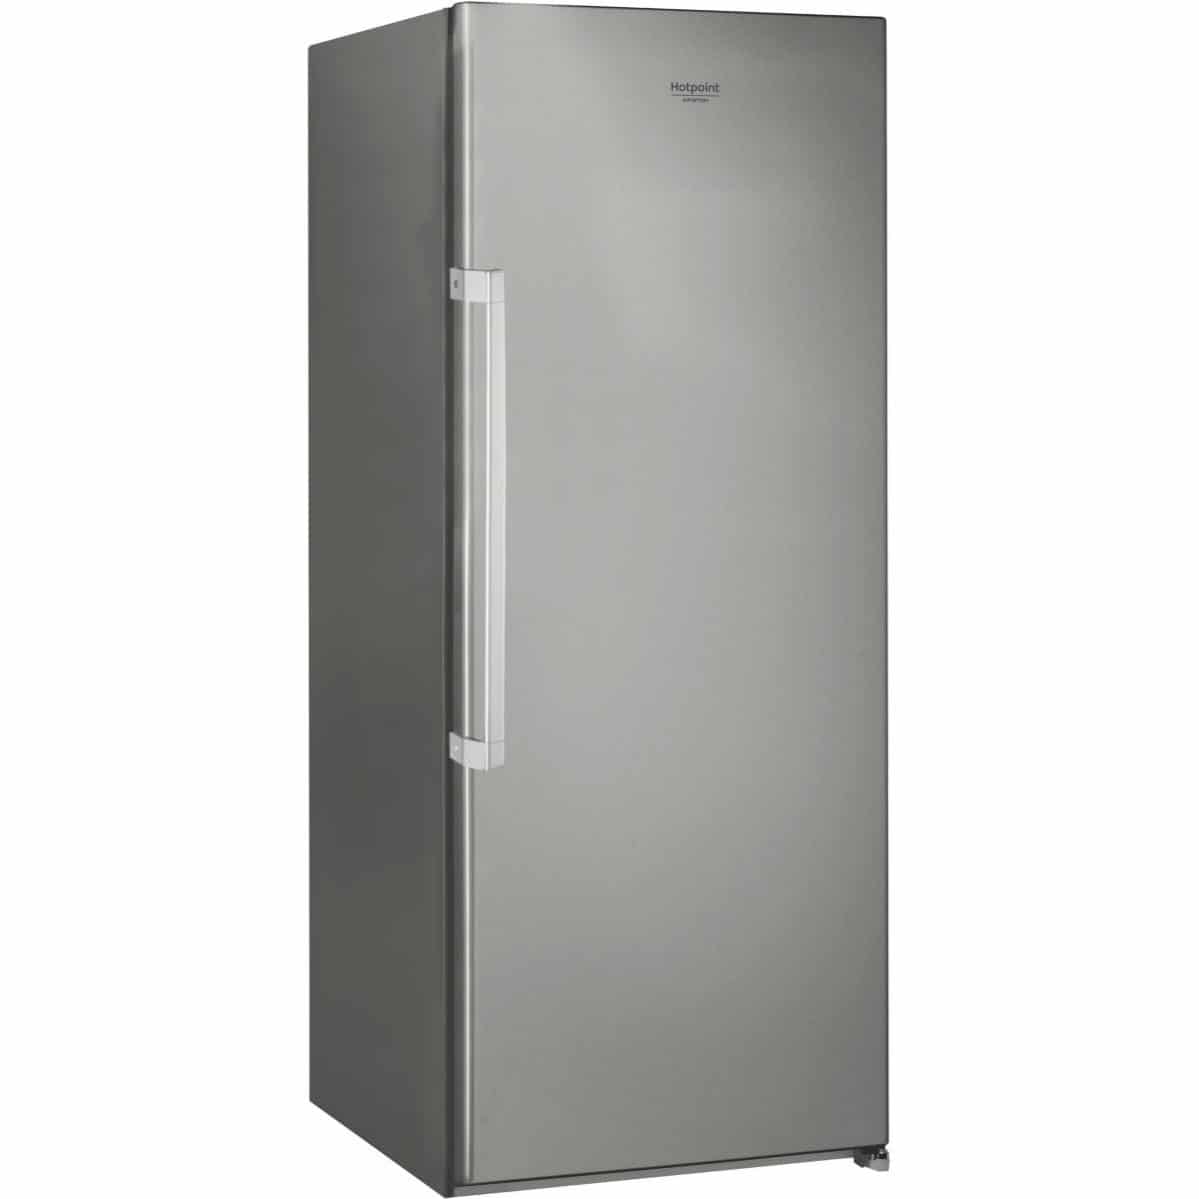 Réfrigérateur 1 Porte Hotpoint SH61QXRD - Chardenon Équipe votre